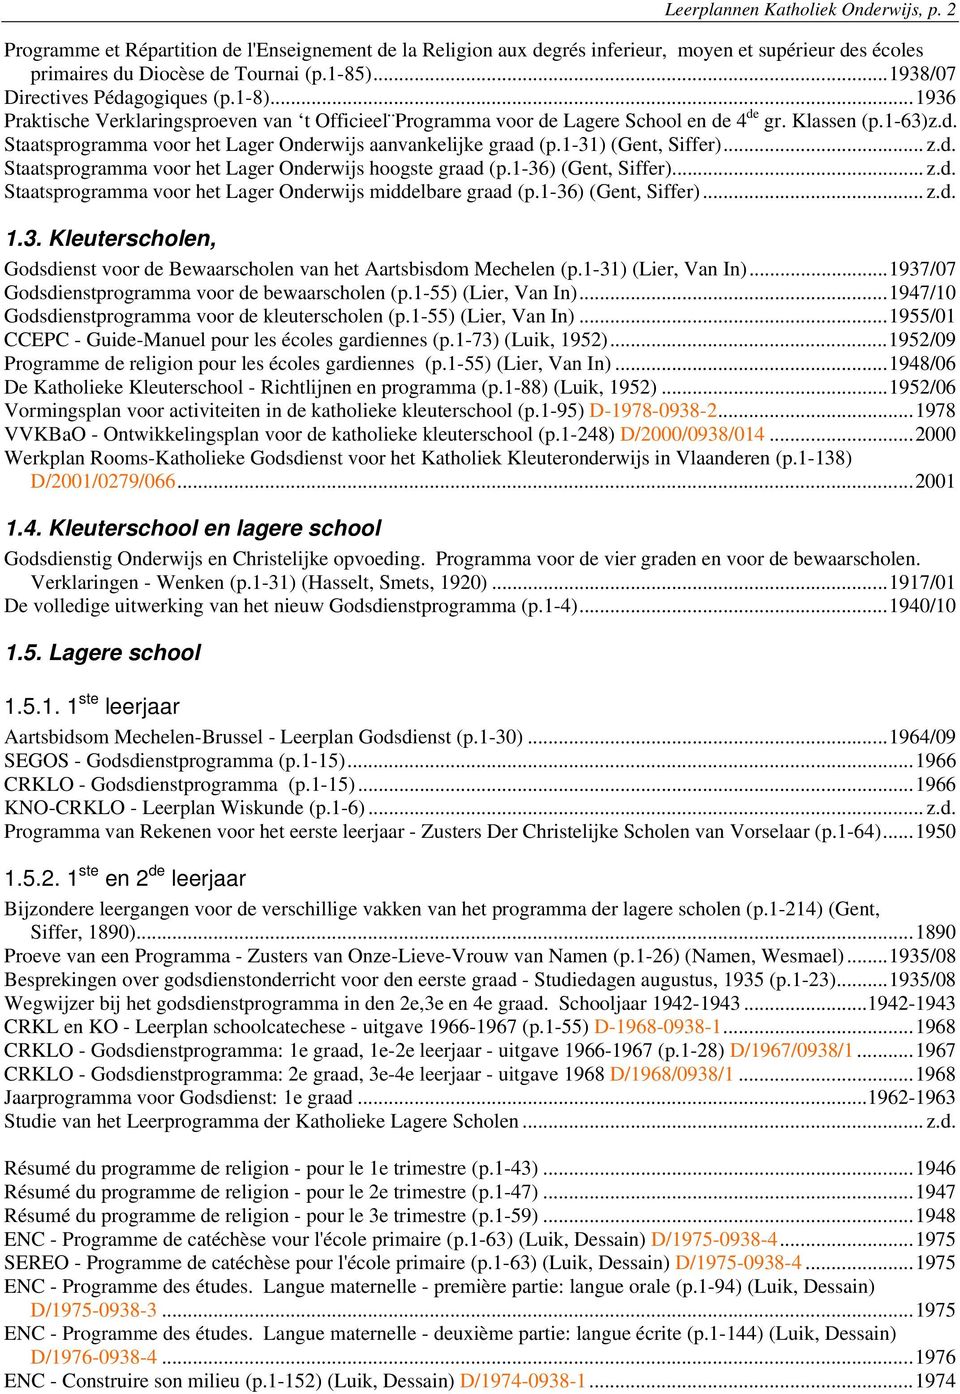 1-31) (Gent, Siffer)... z.d. Staatsprogramma voor het Lager Onderwijs hoogste graad (p.1-36) (Gent, Siffer)... z.d. Staatsprogramma voor het Lager Onderwijs middelbare graad (p.1-36) (Gent, Siffer)... z.d. 1.